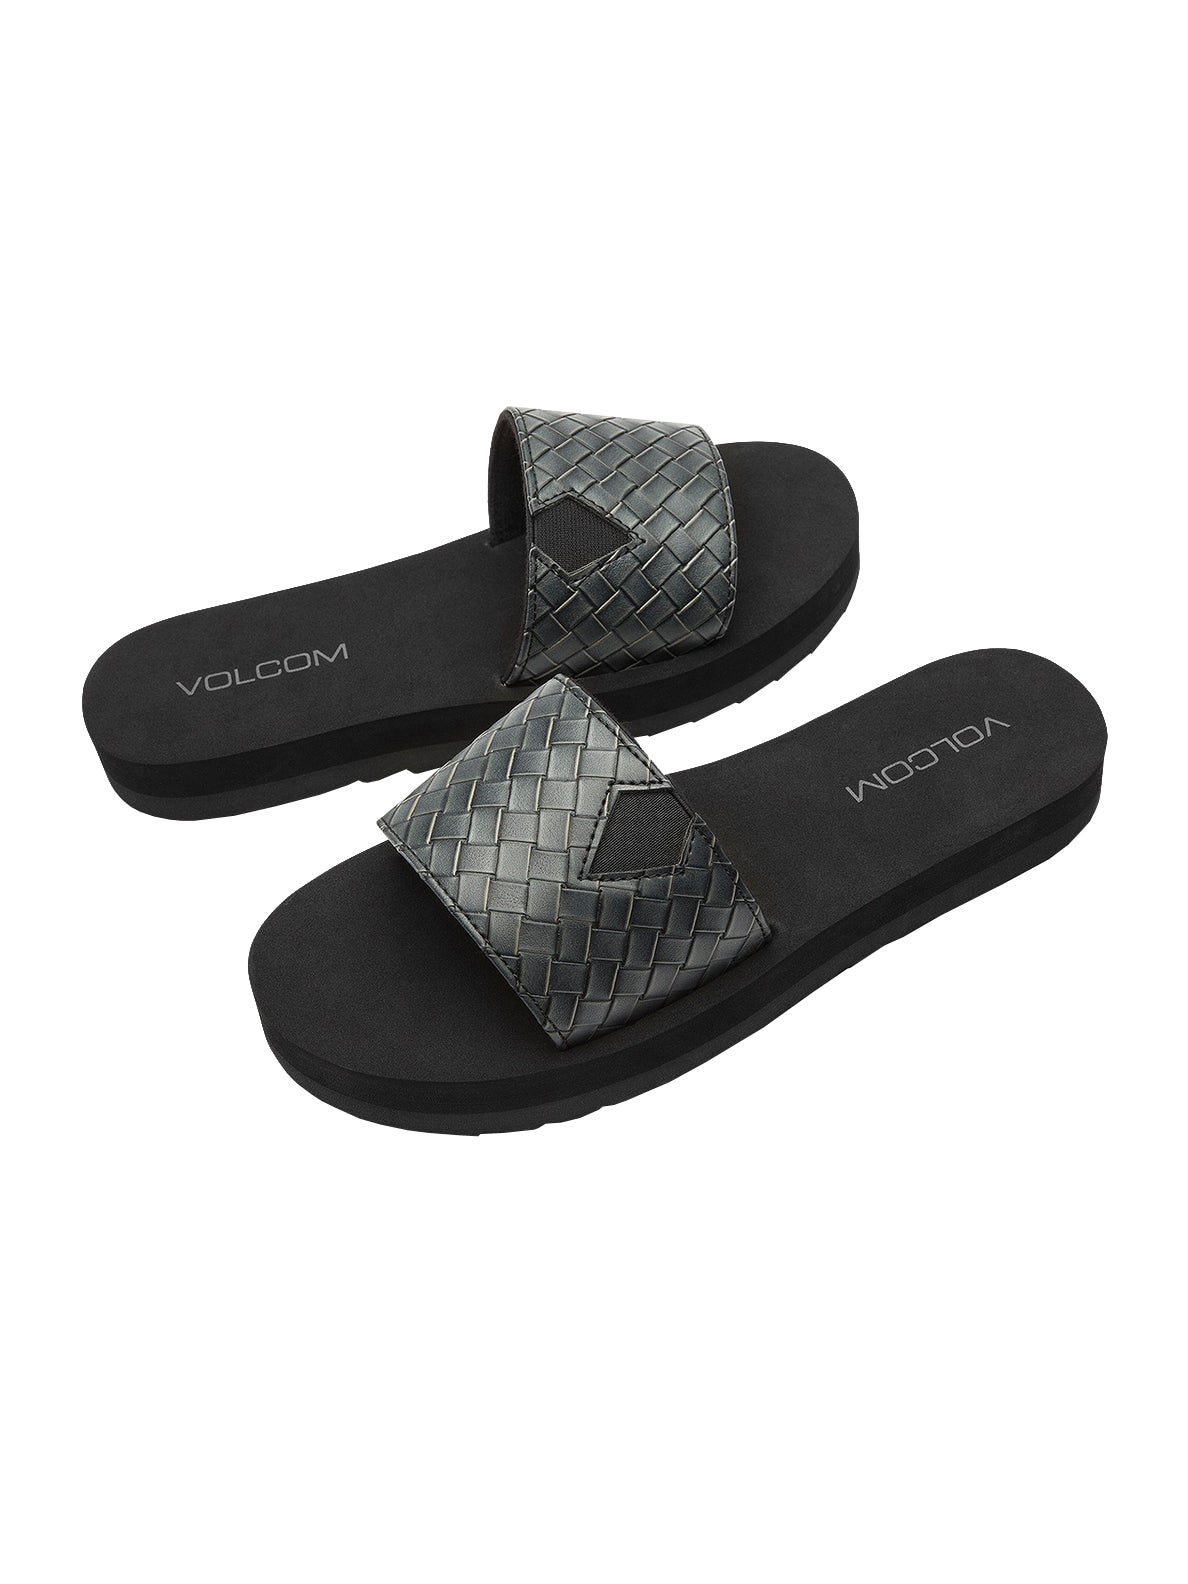 Volcom Not So Simple Slide Womens Sandal BLK-Black 5